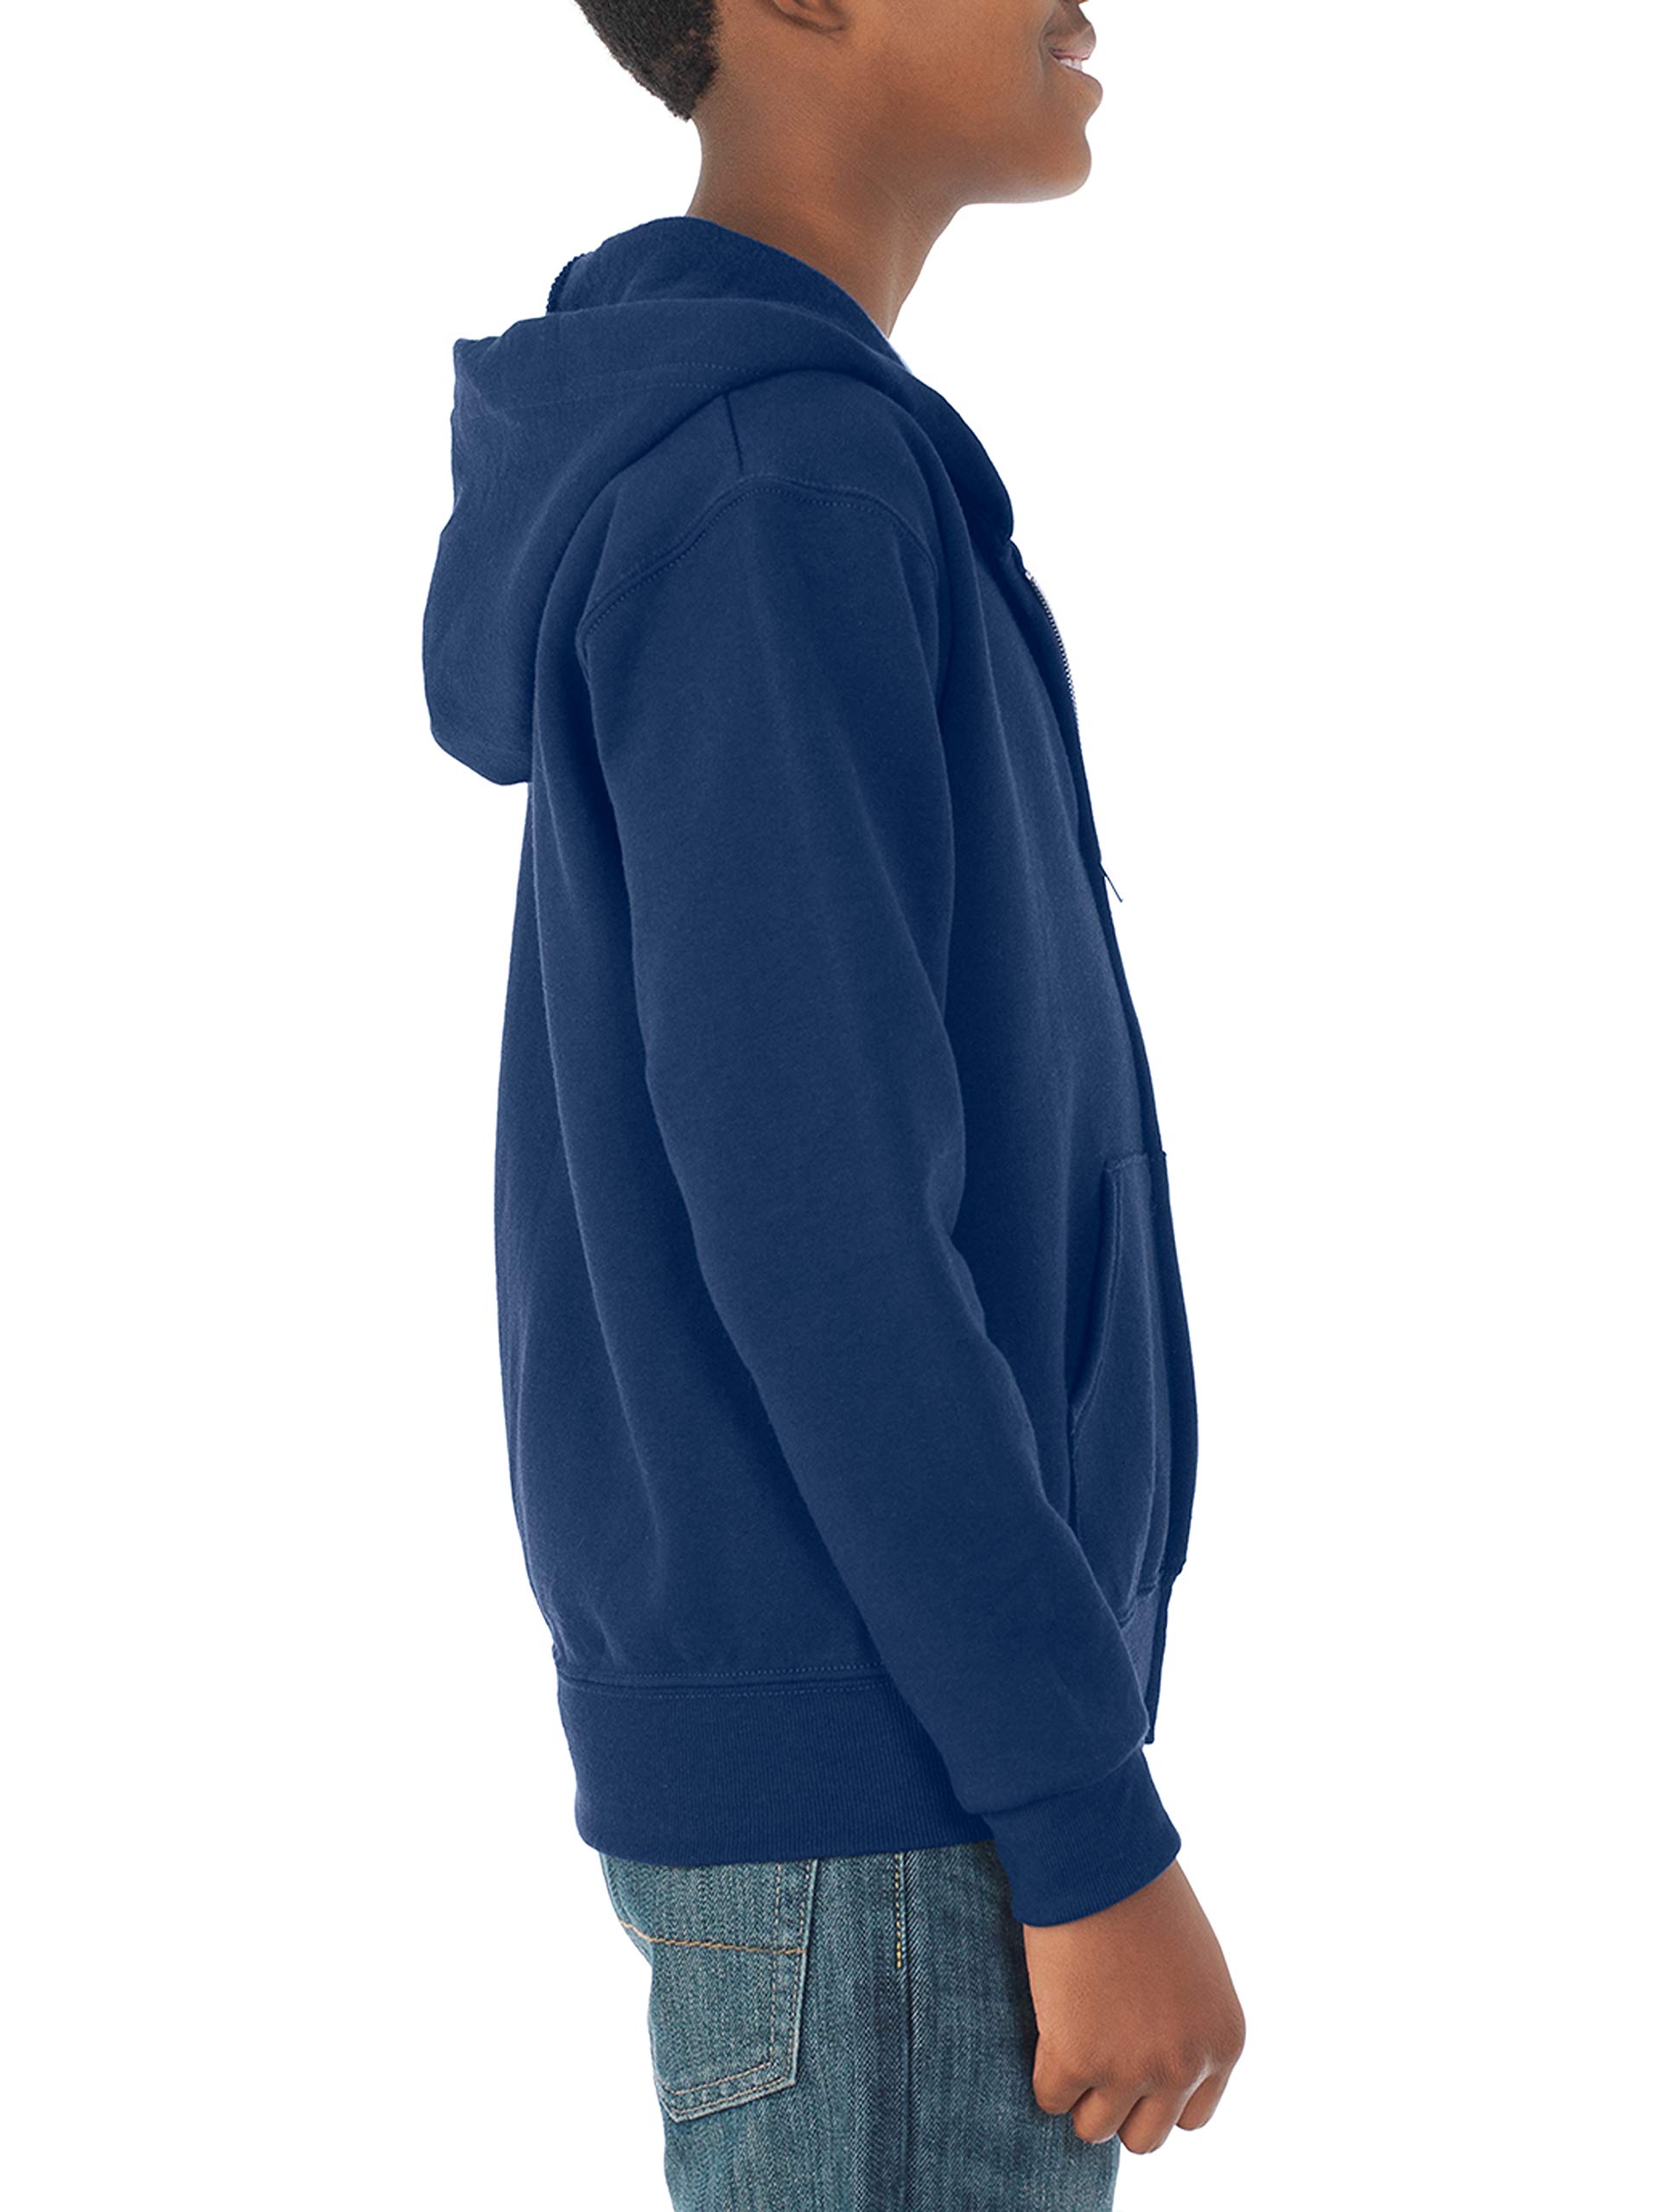 Jerzees boys Fleece Sweatshirts, Hoodies & Sweatpants Hooded Sweatshirt, Full Zip - Navy, Small US